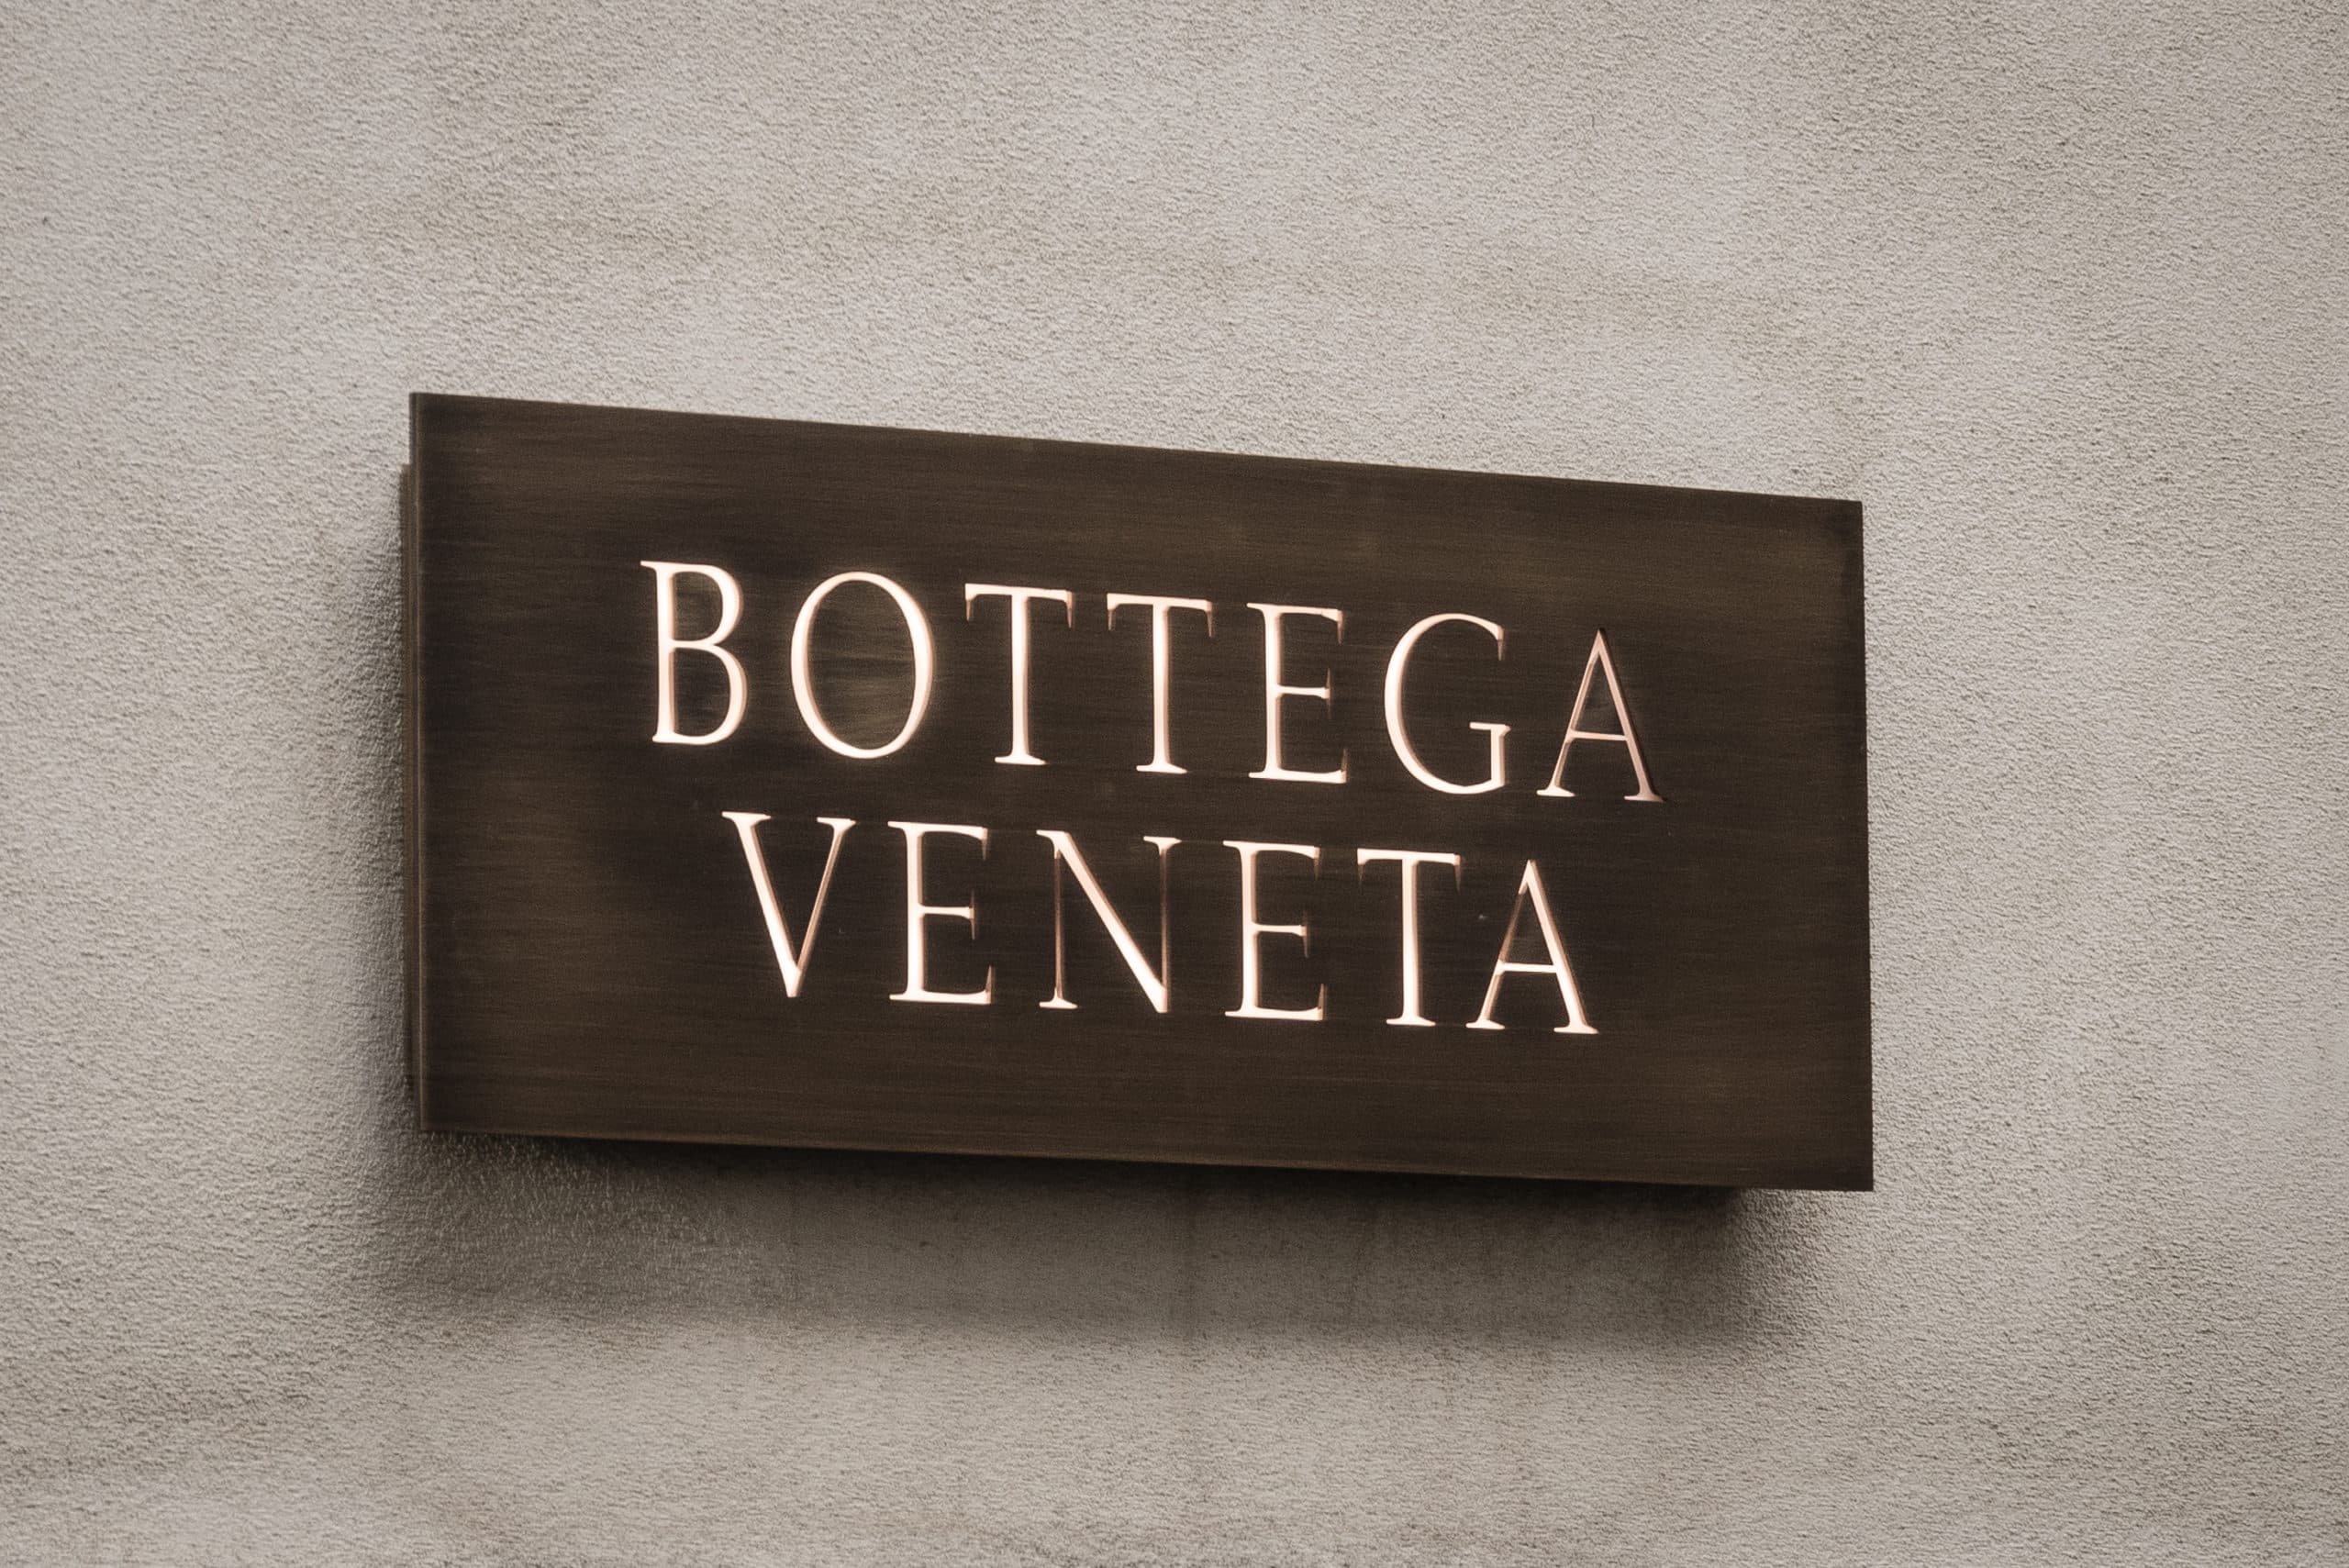 Bottega Veneta - The Invisible Store